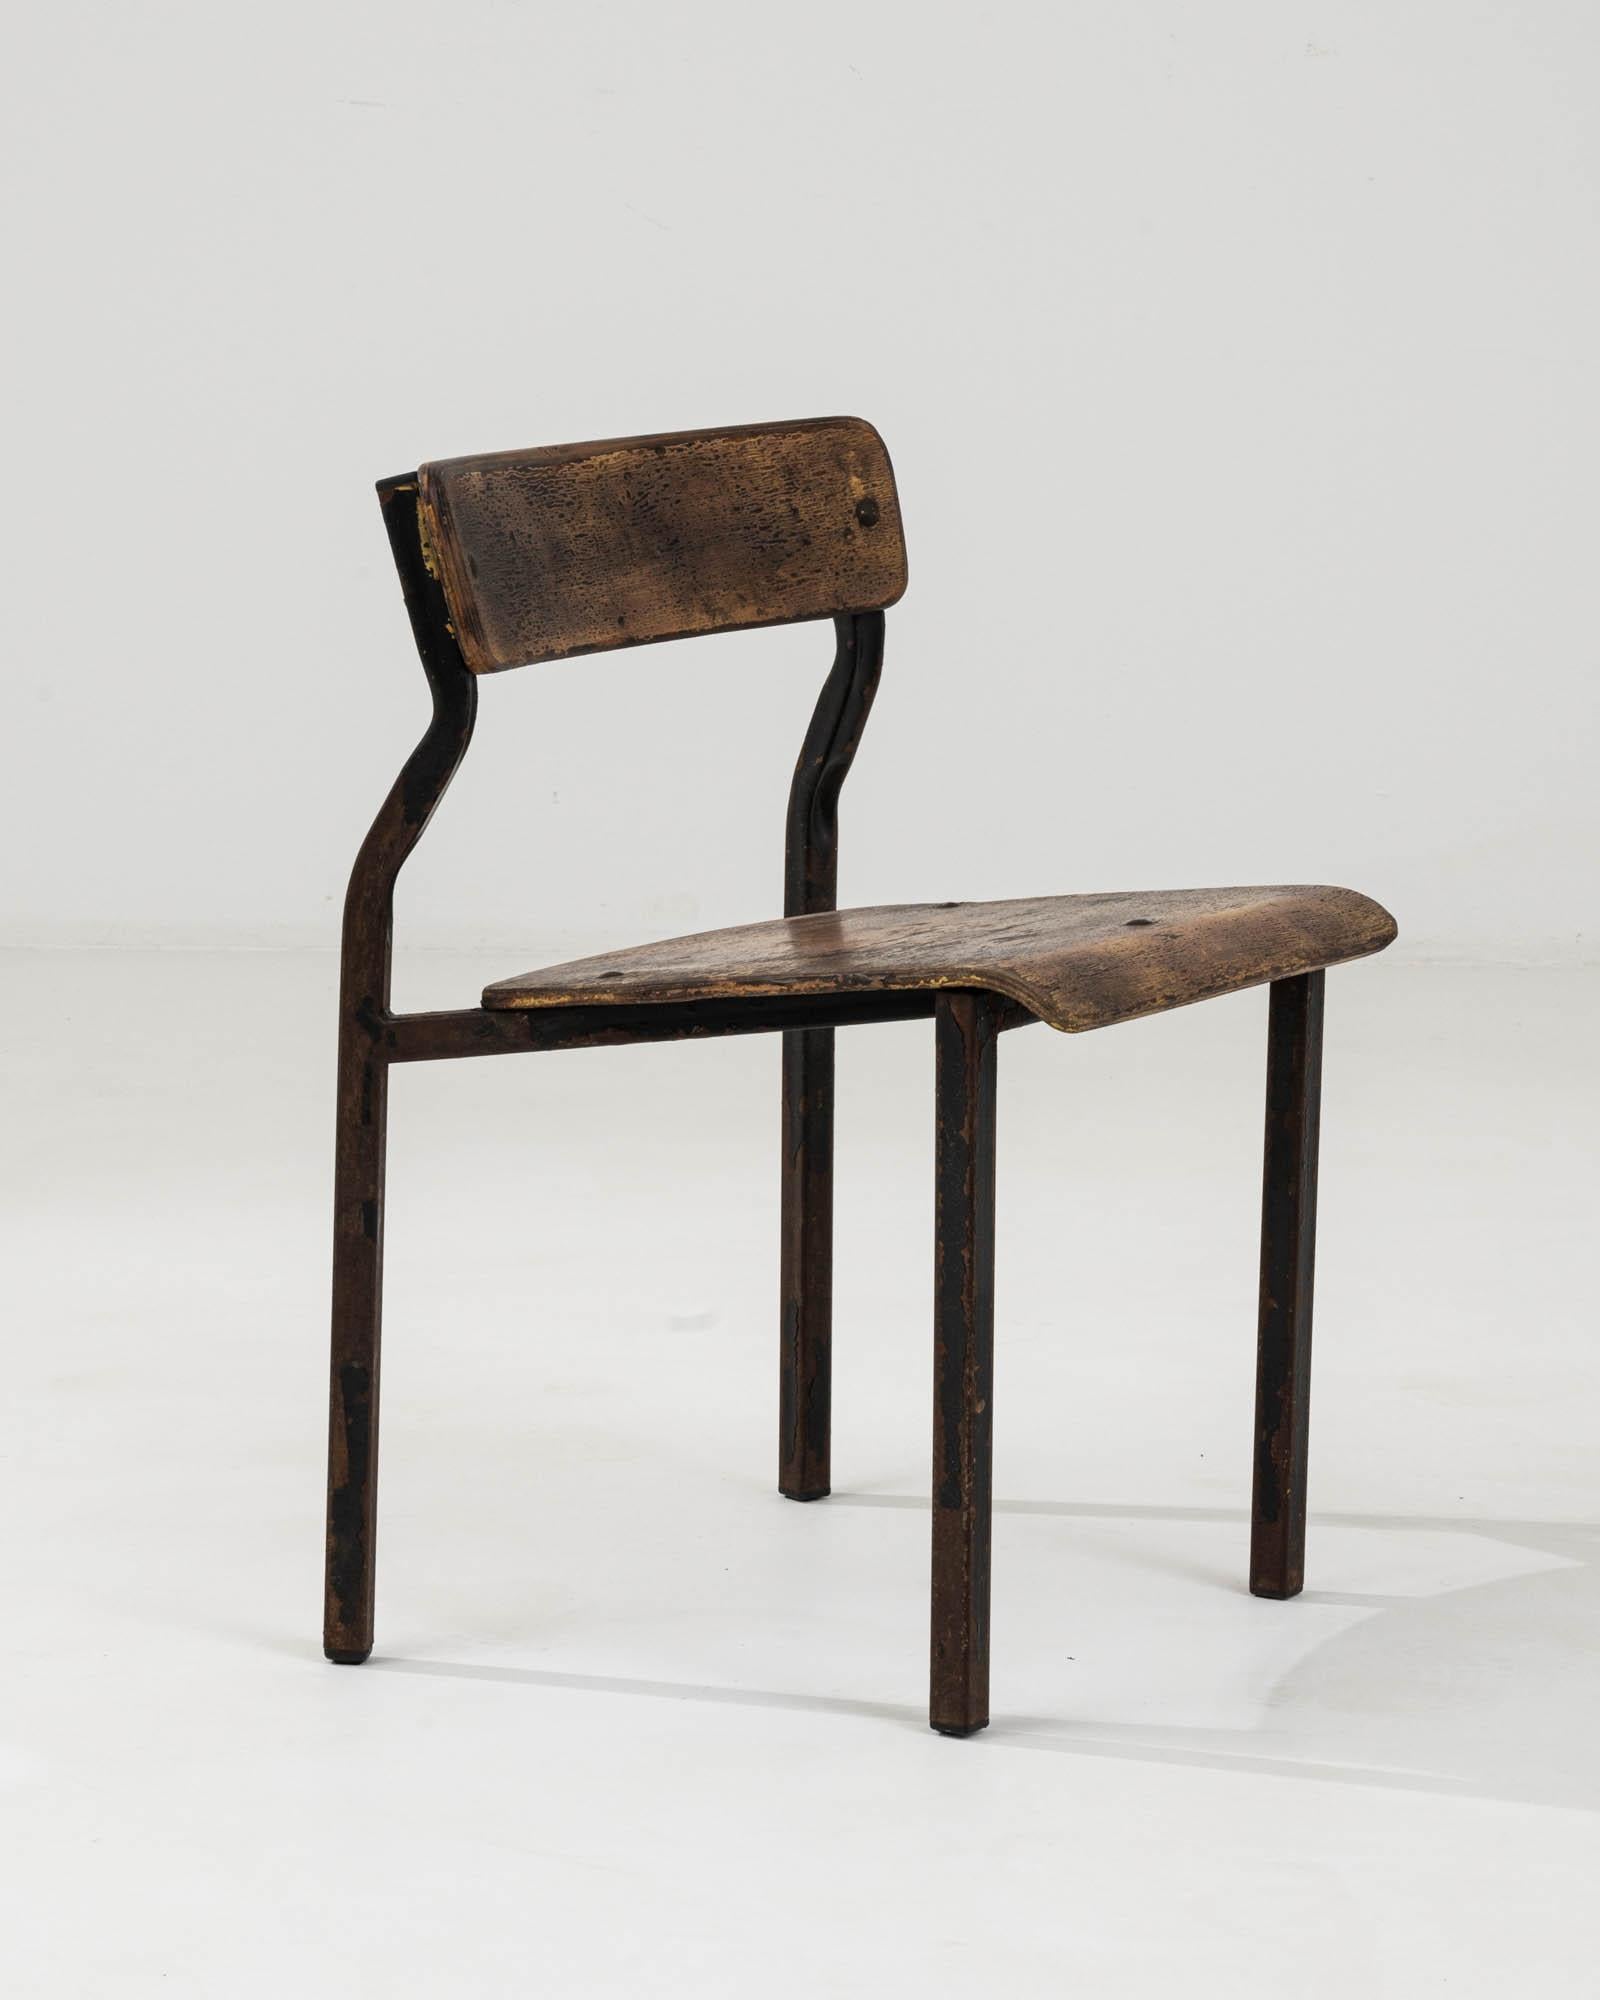 Remontez le temps avec cette authentique chaise d'Europe centrale du XXe siècle, une pièce qui apporte le charme rustique et l'élégance sans prétention d'antan dans les espaces contemporains d'aujourd'hui. Fabriquée à partir d'une solide structure